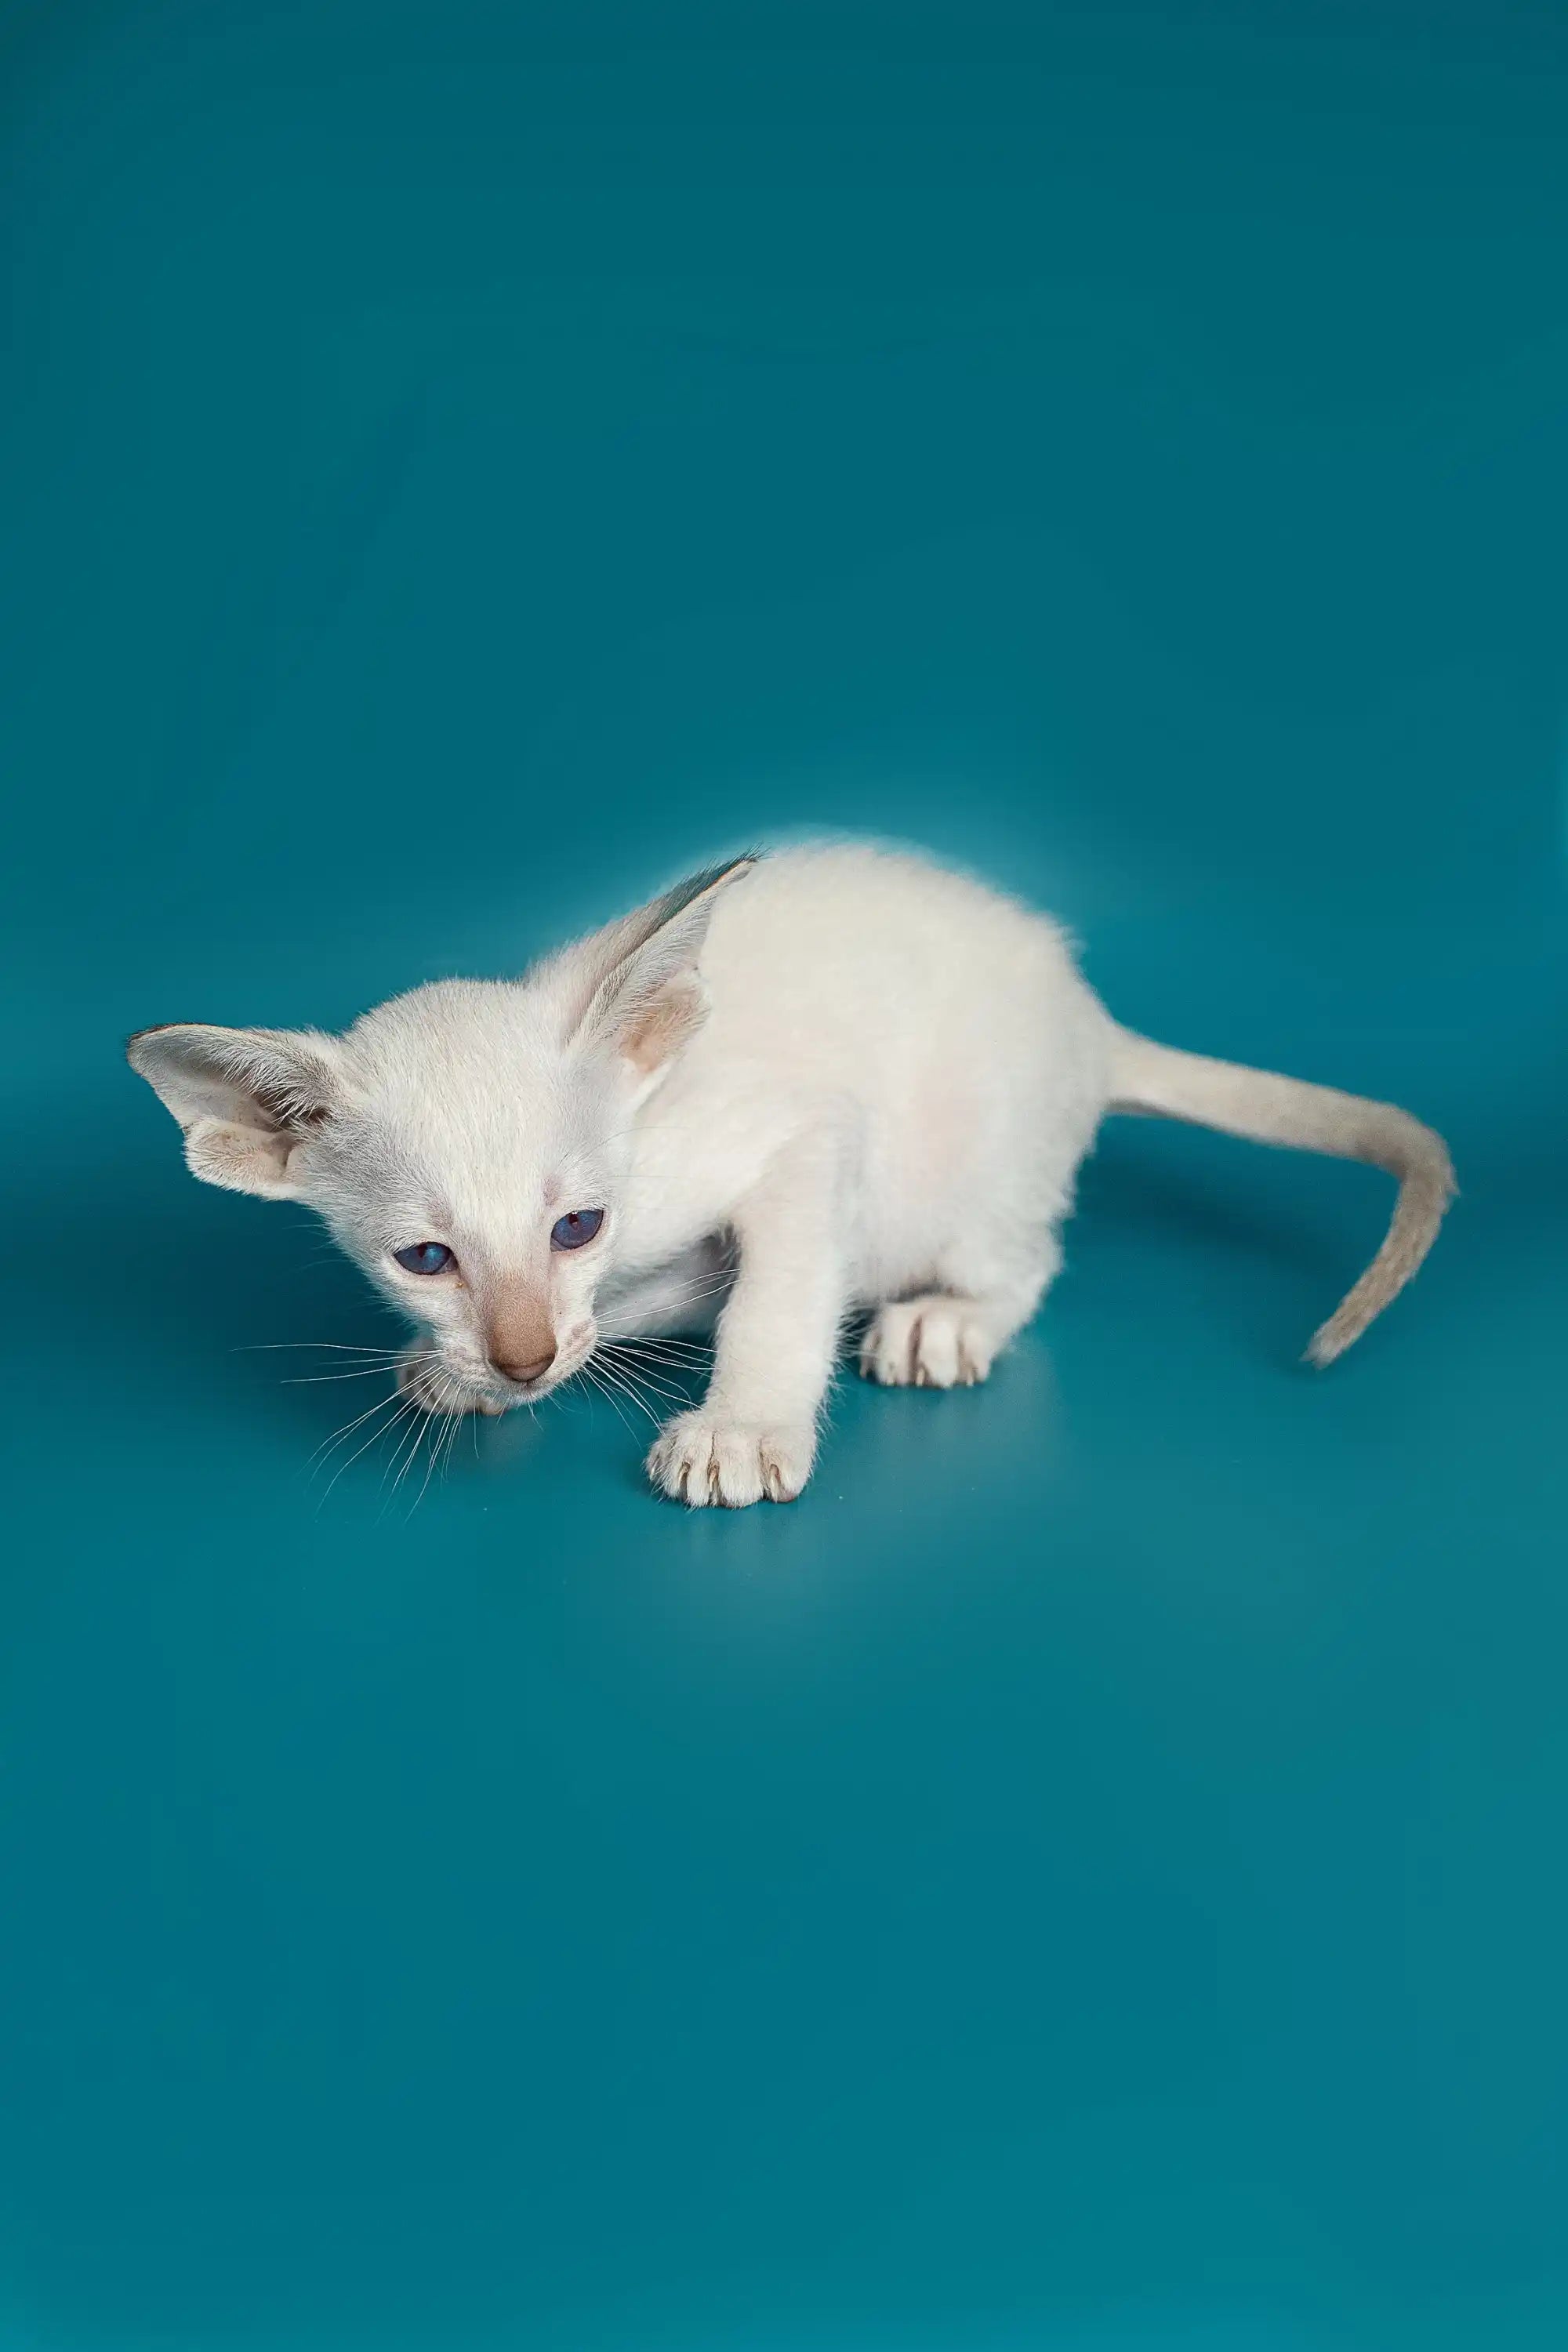 Oriental Shorthair Kittens For Sale Kevin | Kitten